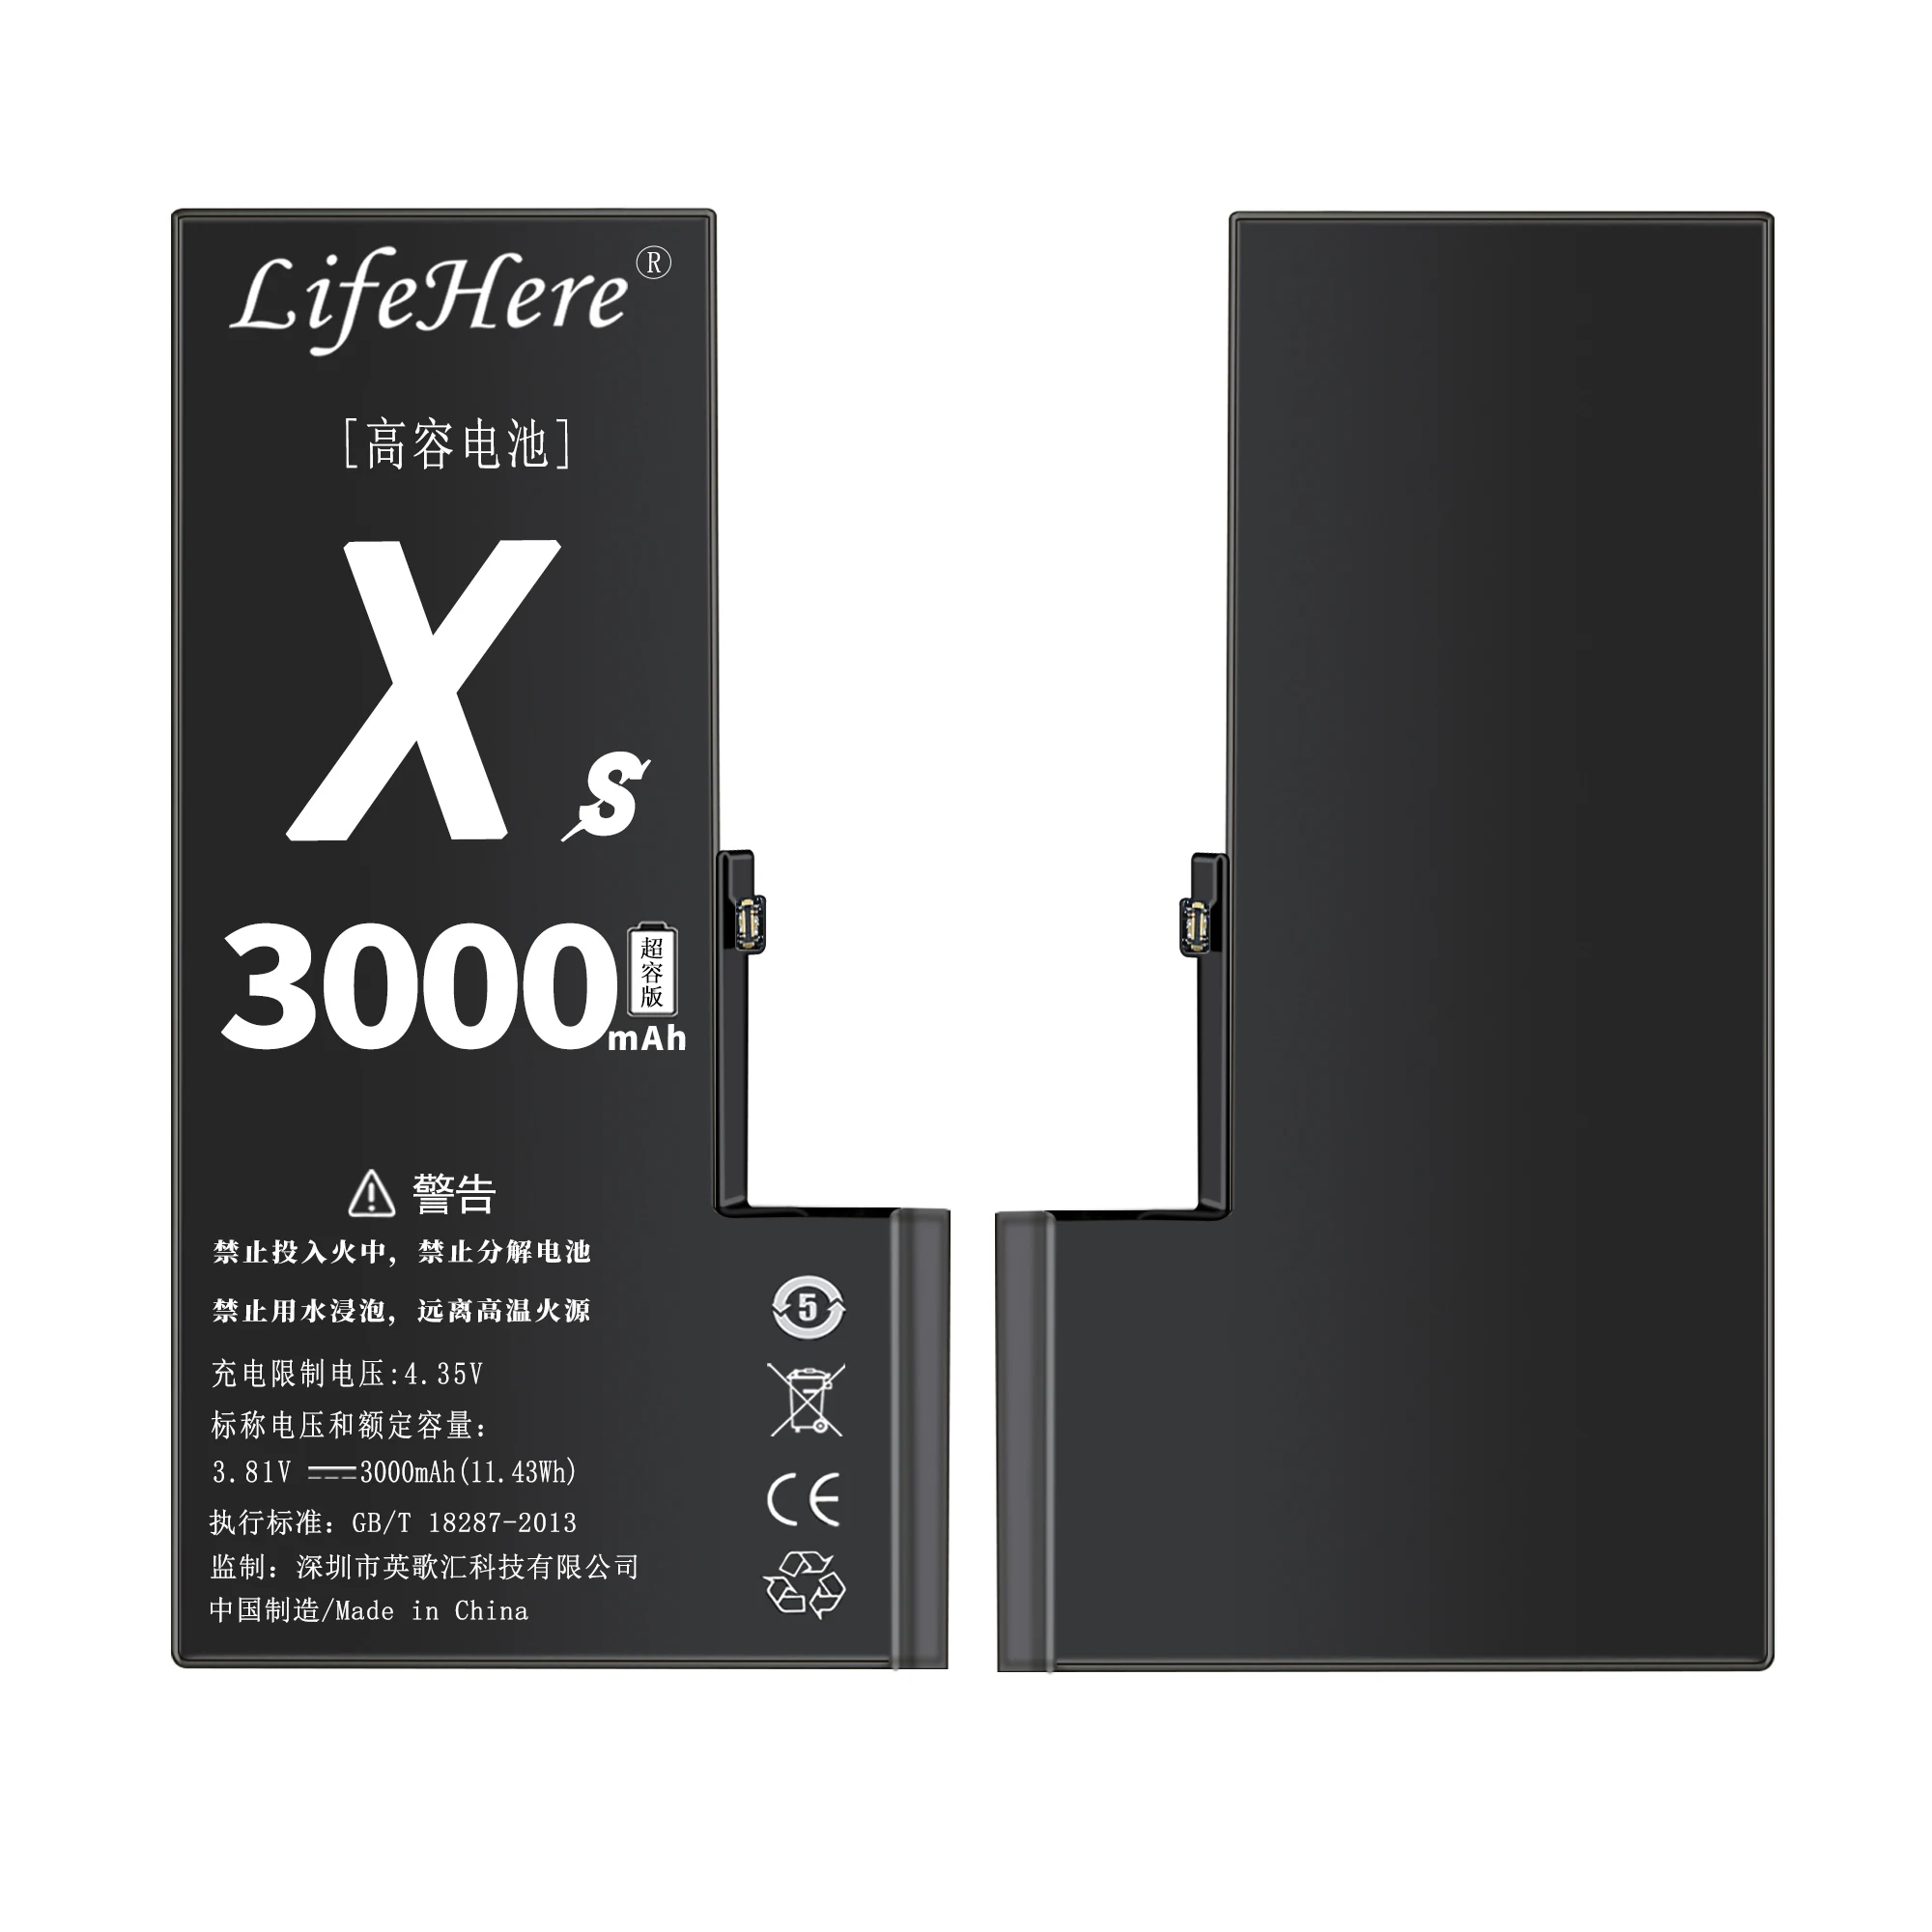 מקורי Lifehere 3000Mah סוללה עבור iPhone של אפל XS A2097 A1920 A2098 חלק תיקון קיבולת גבוהה הסוללות - 5